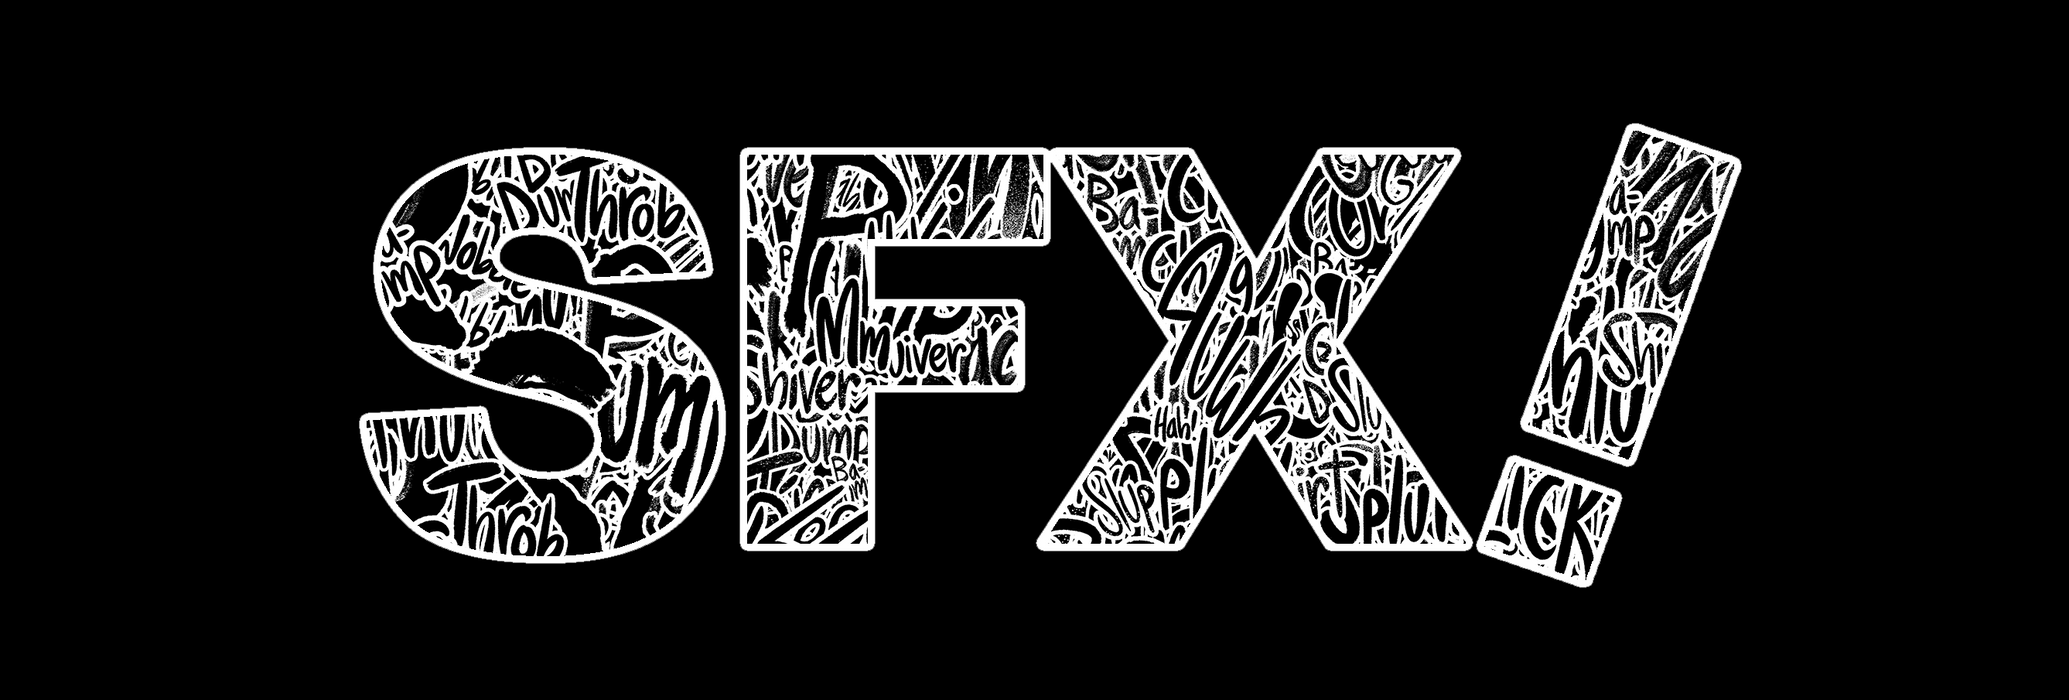 "SFX!" B&W Bucket